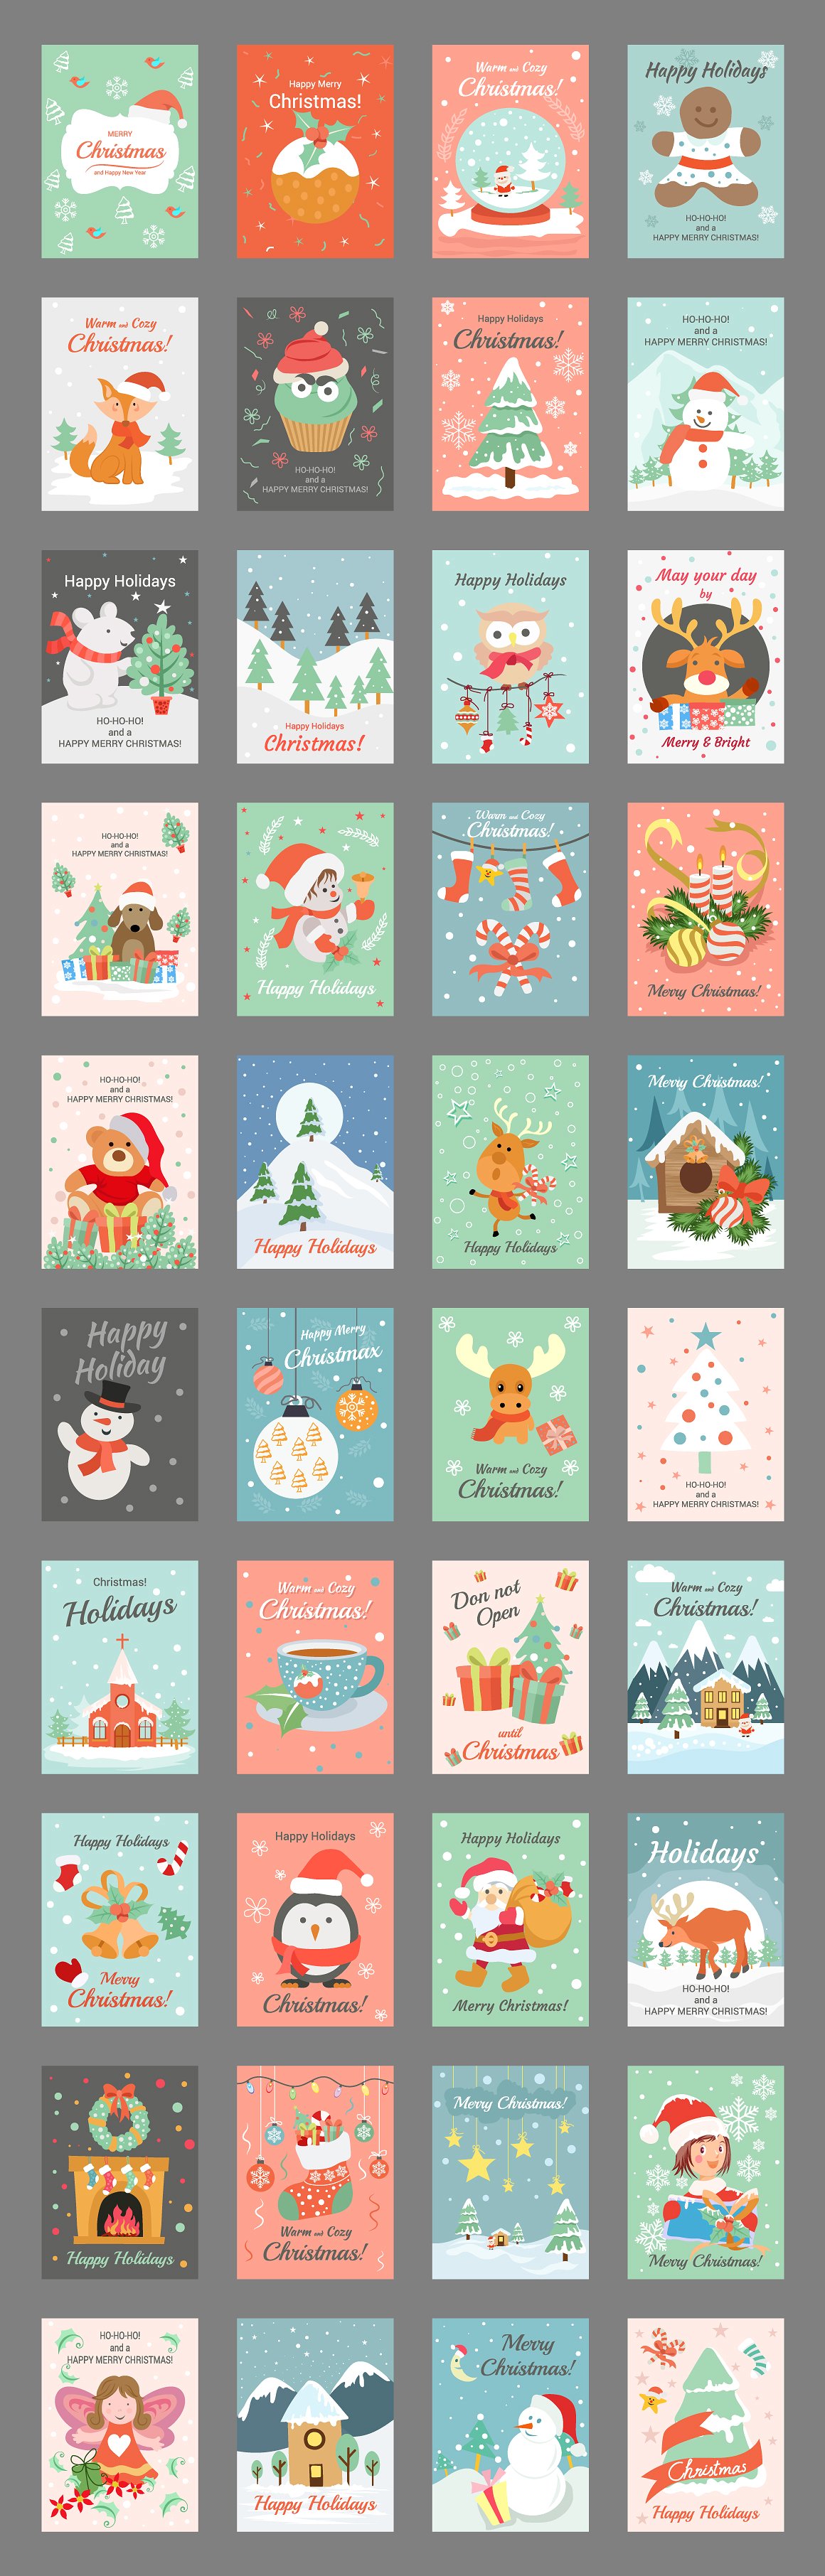 圣诞节卡片素材插画素材40 Christmas Cards